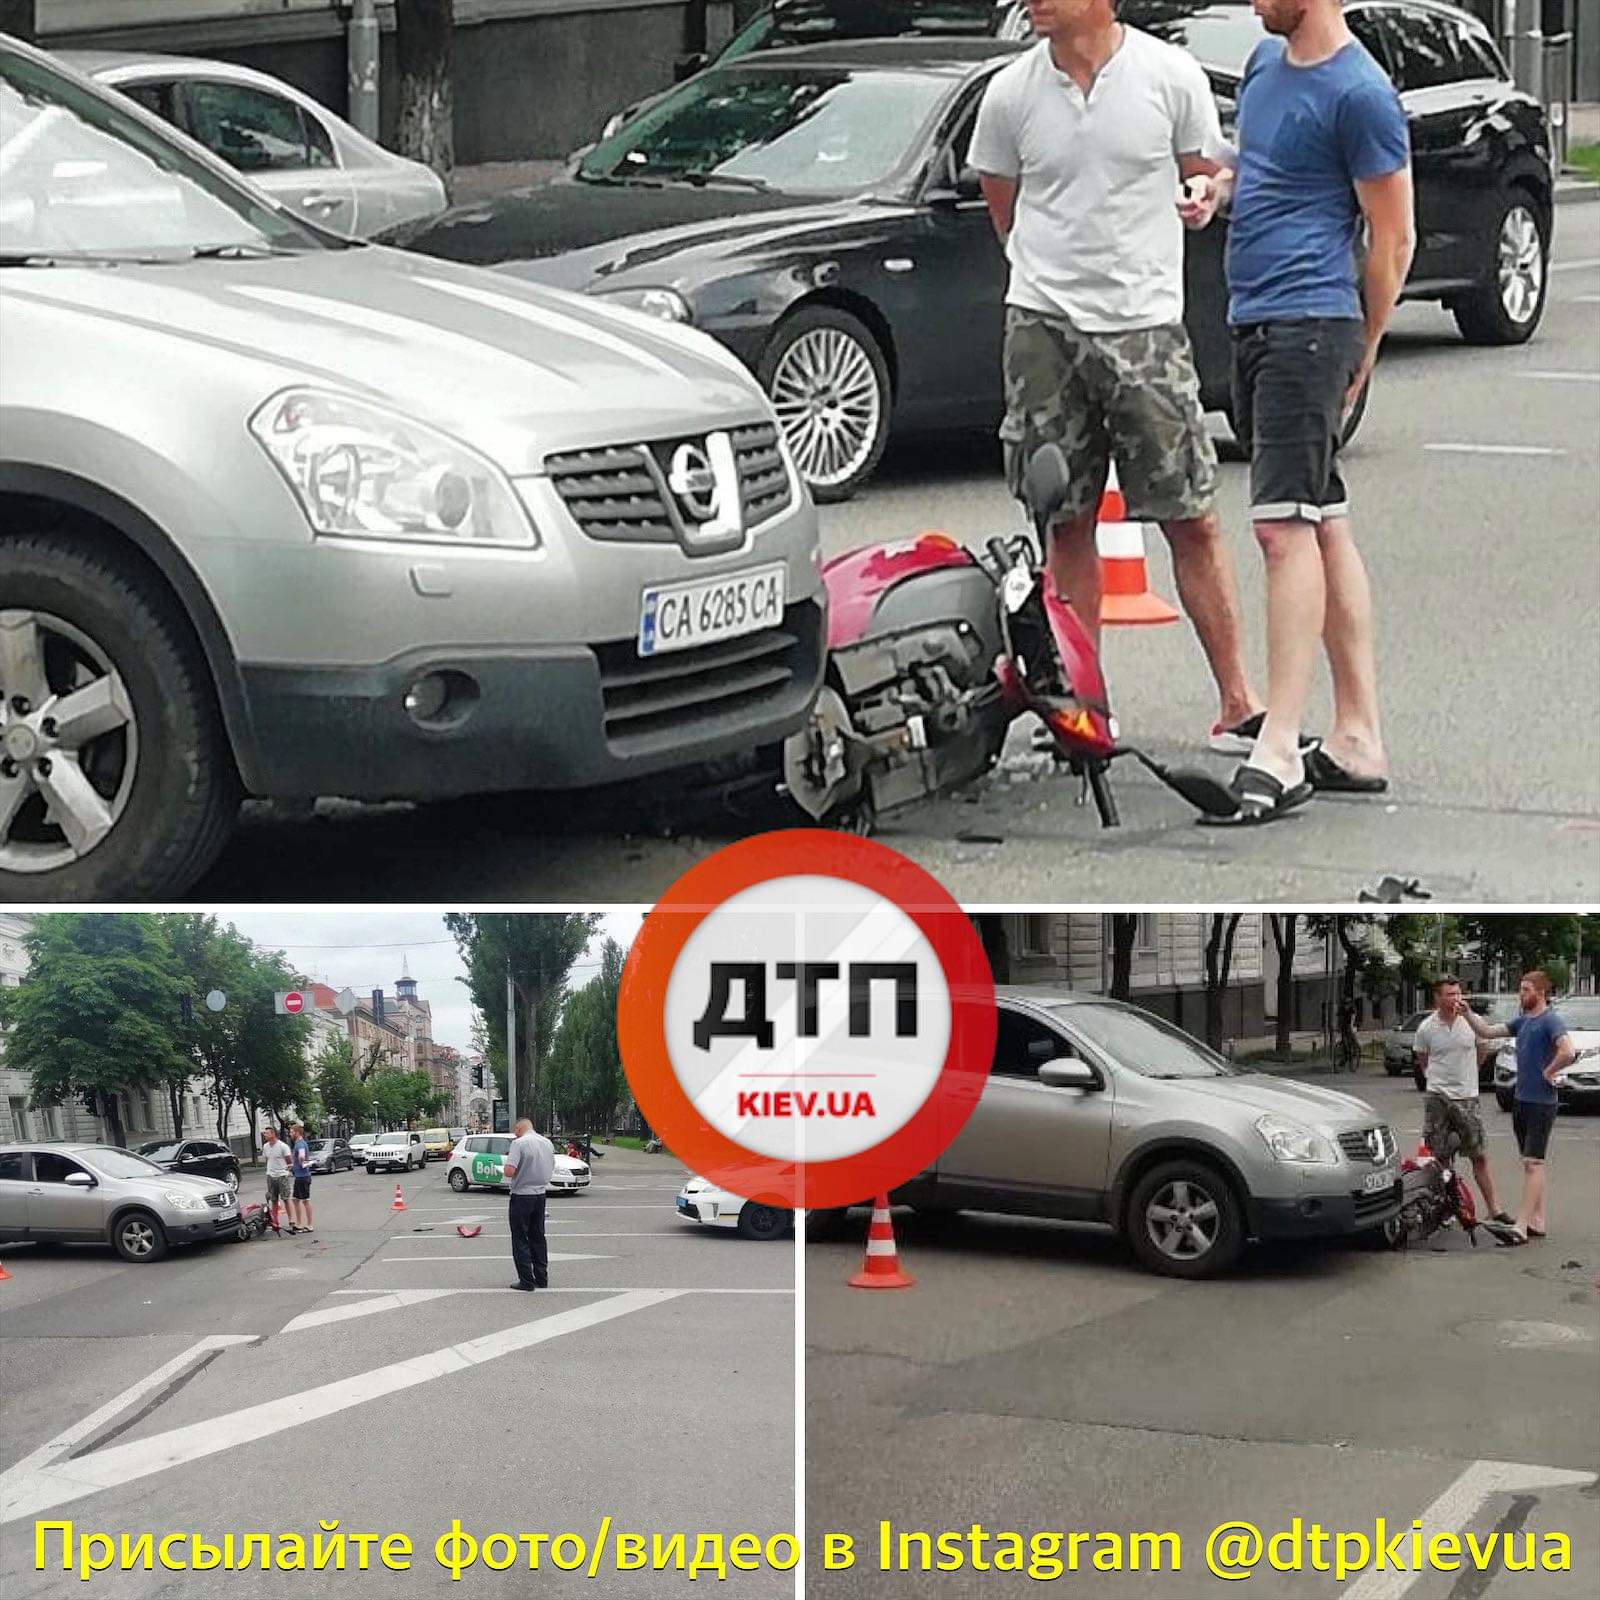 В центре Киева произошло ДТП с пострадавшими - автомобиль Nissan сбил скутер: пилот госпитализирован